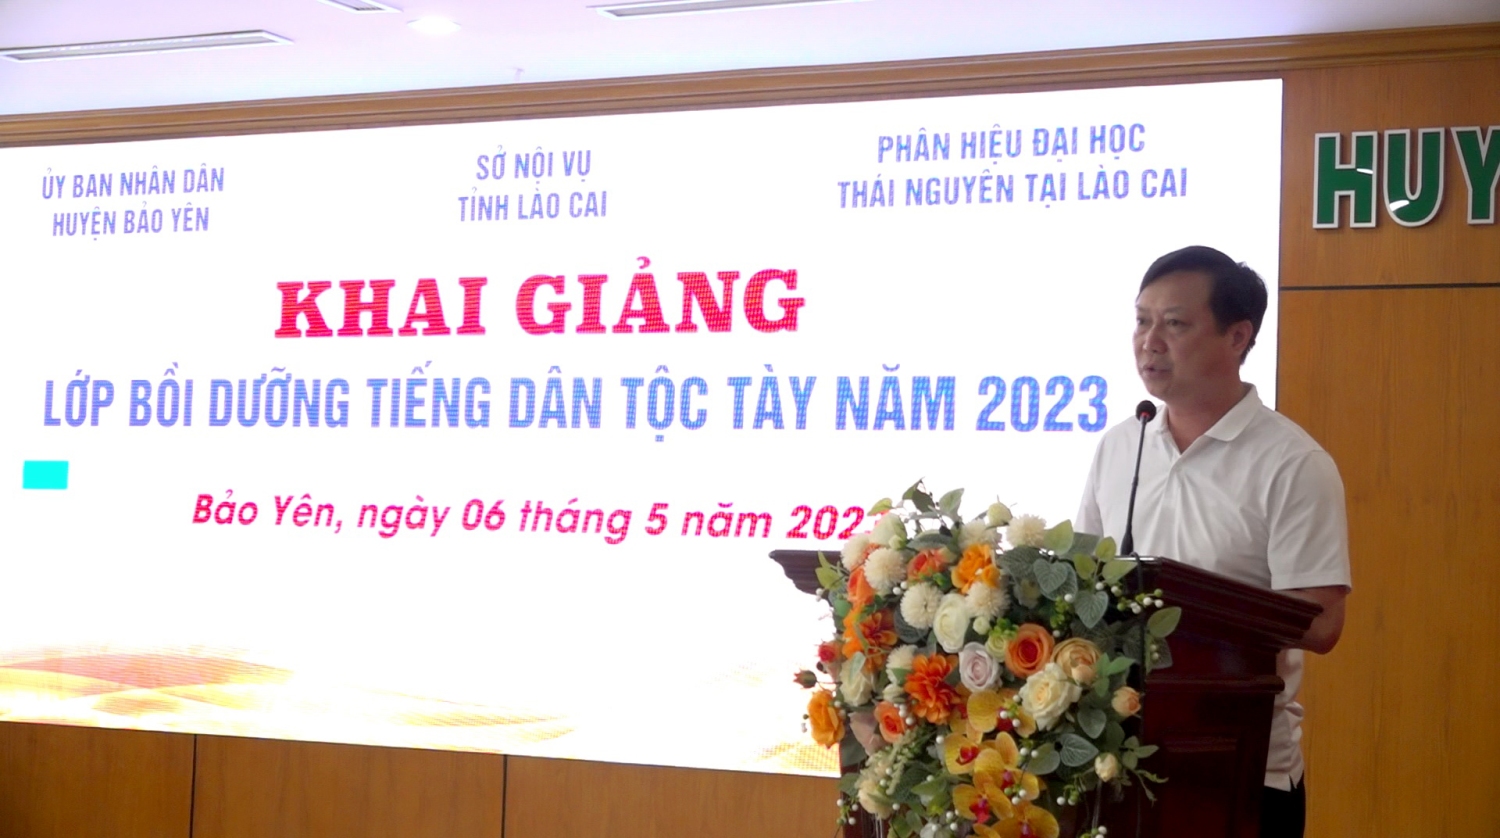 Đồng chí Nguyễn Anh Dũng, Phó Chủ tịch UBND huyện phát biểu tại buổi khai giảng